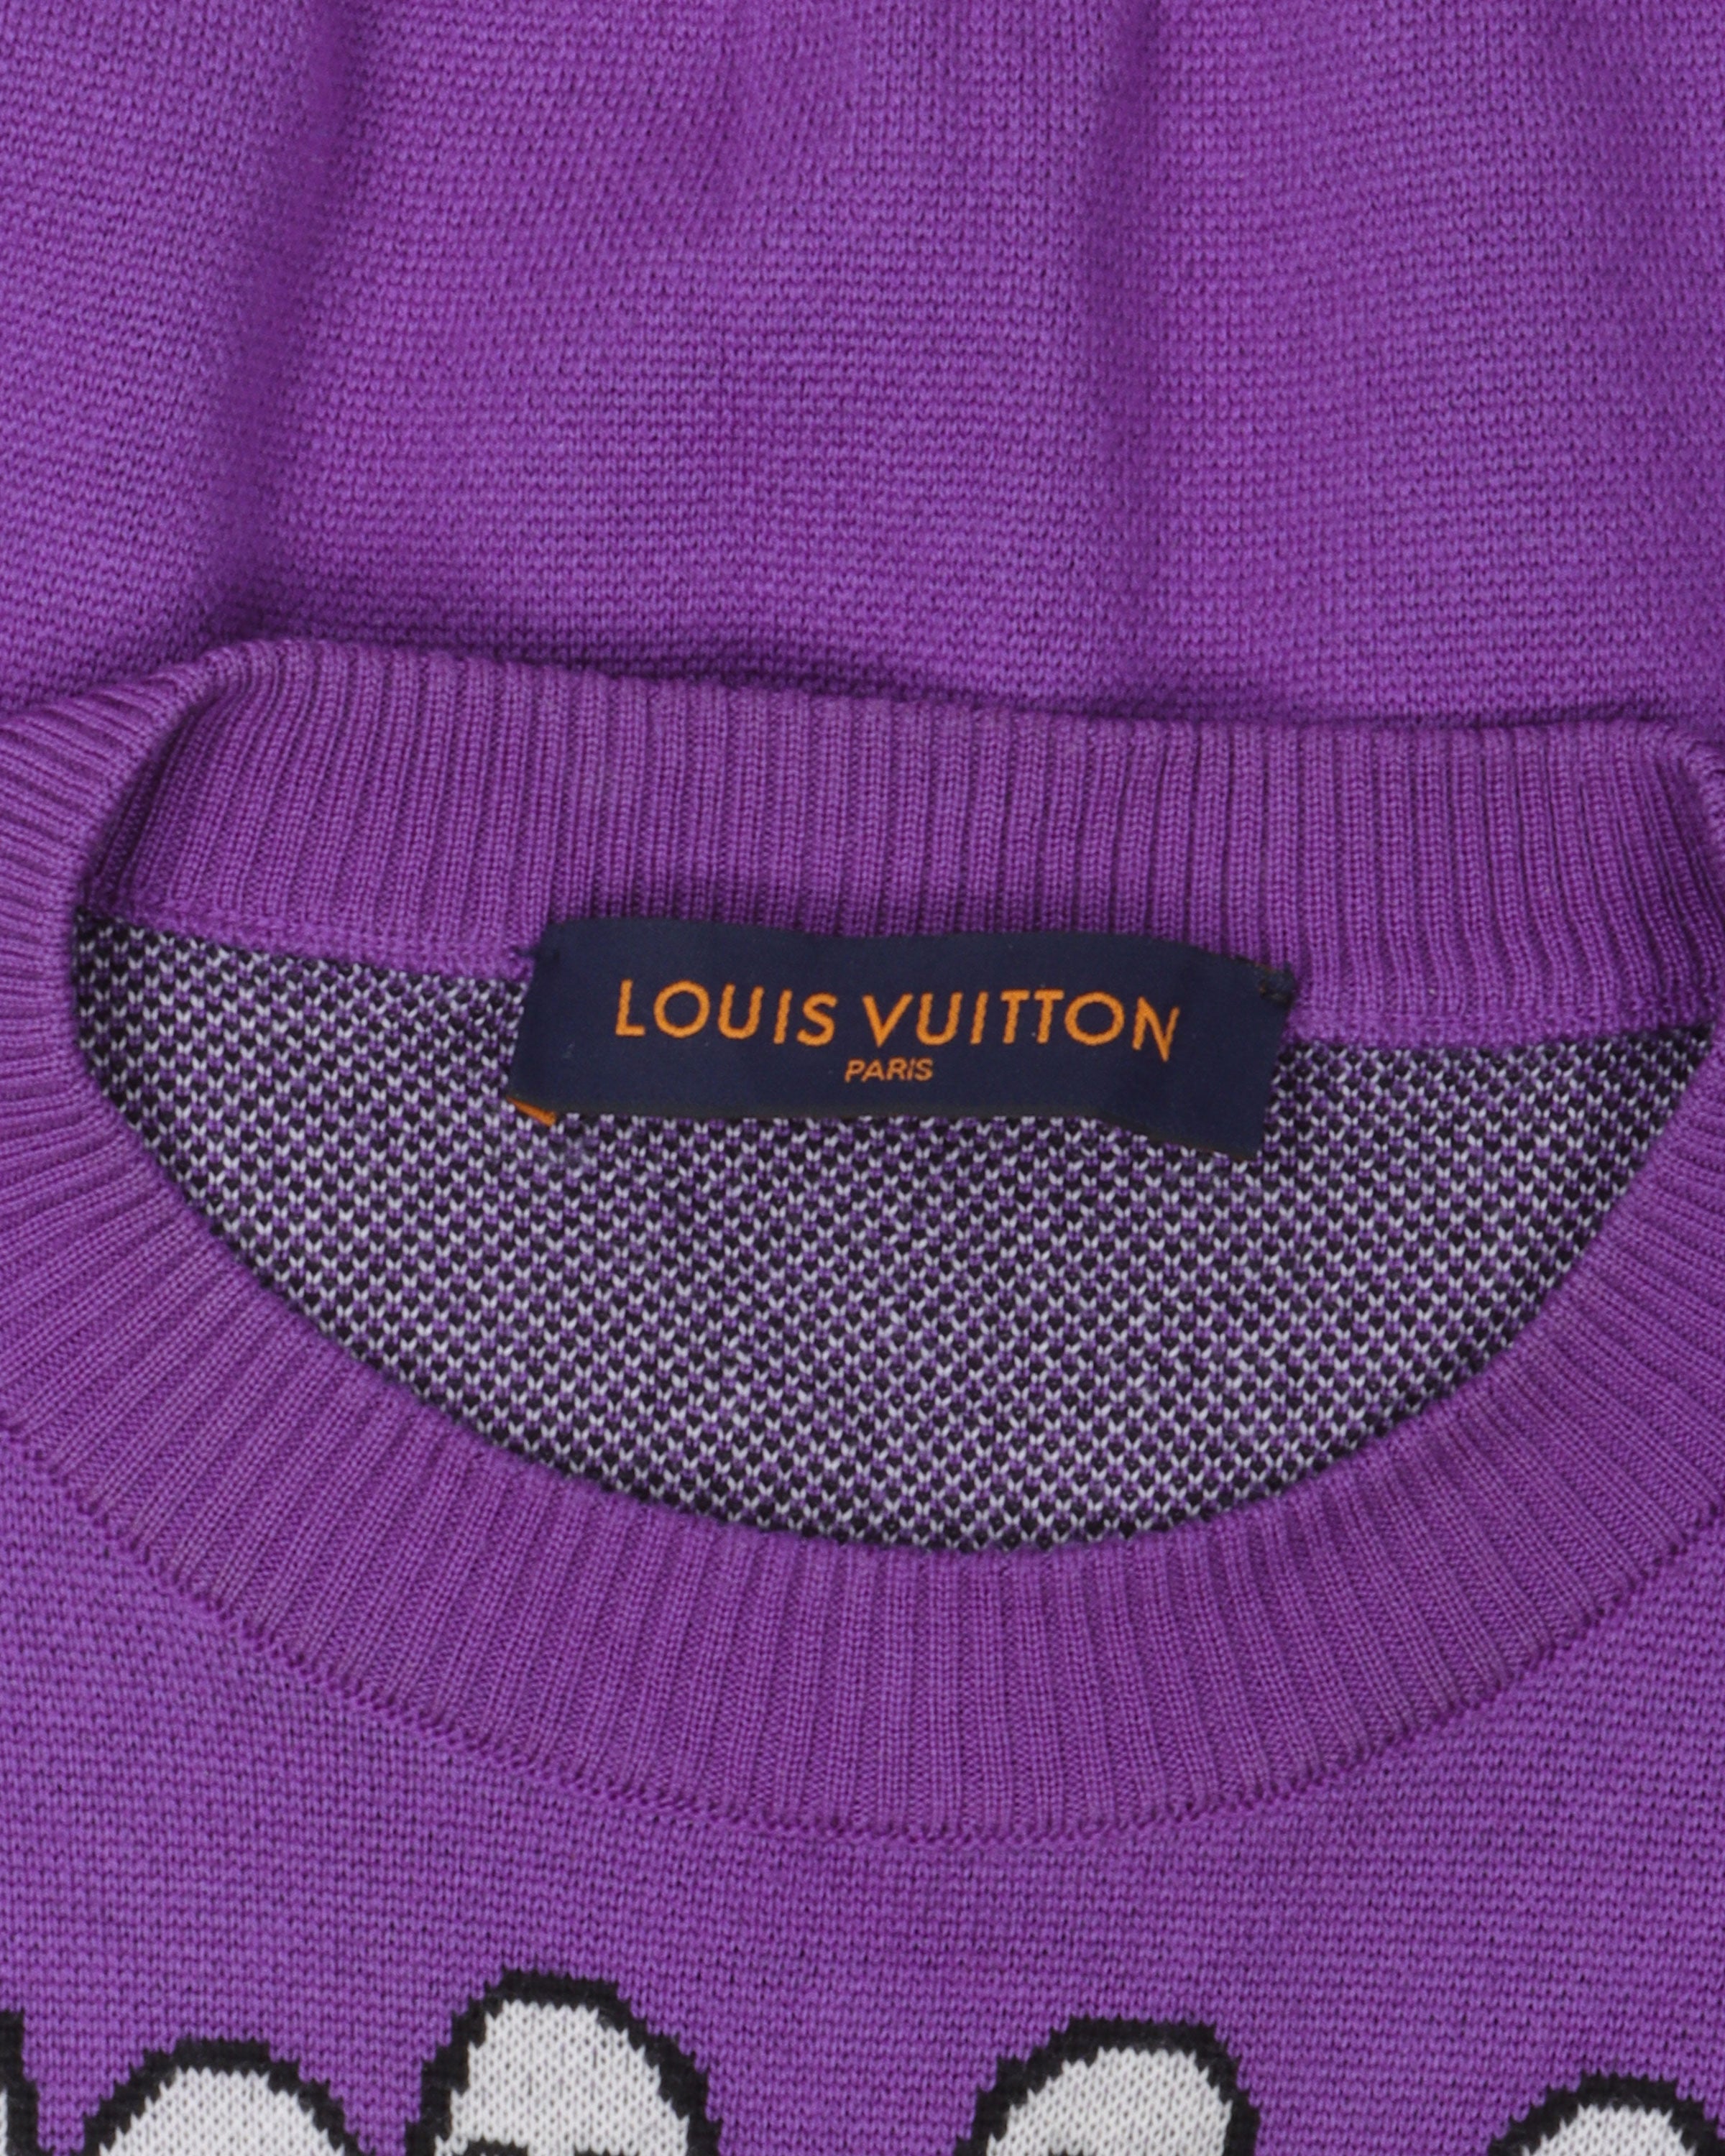 Louis Vuitton Studio Jacquard Crewneck Figue. Size Xs